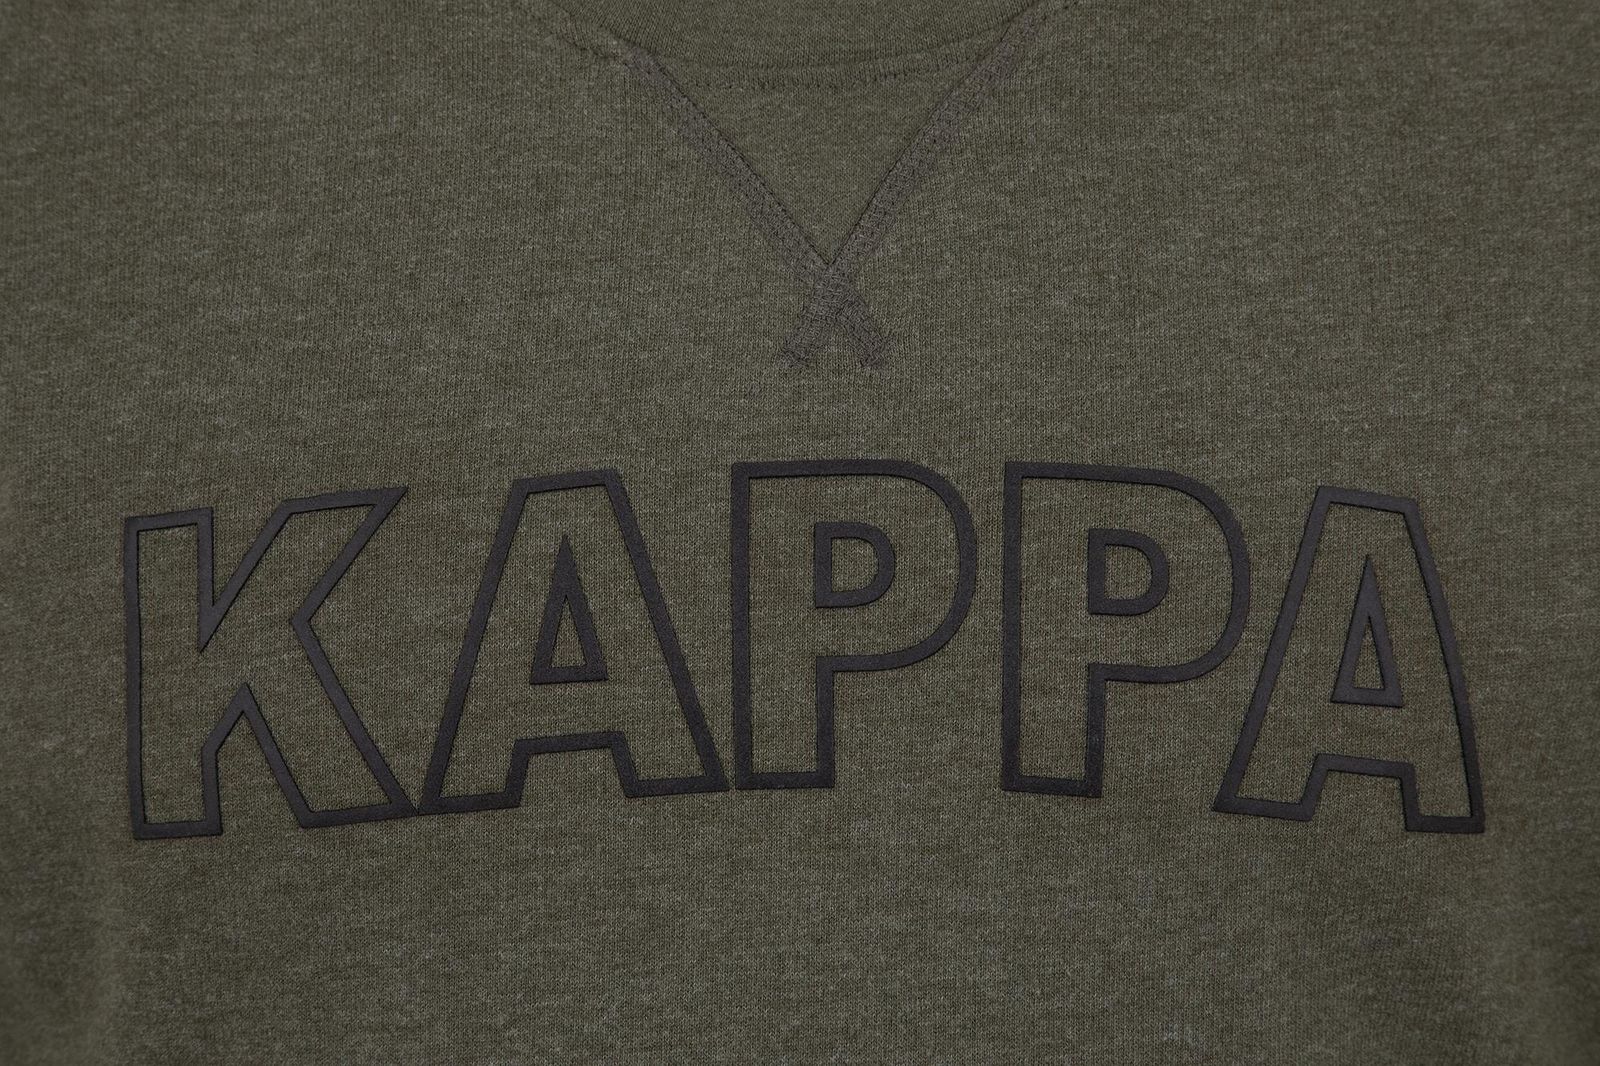   Kappa Men's Jumper, : -. 304IDL0-5U.  L (50)